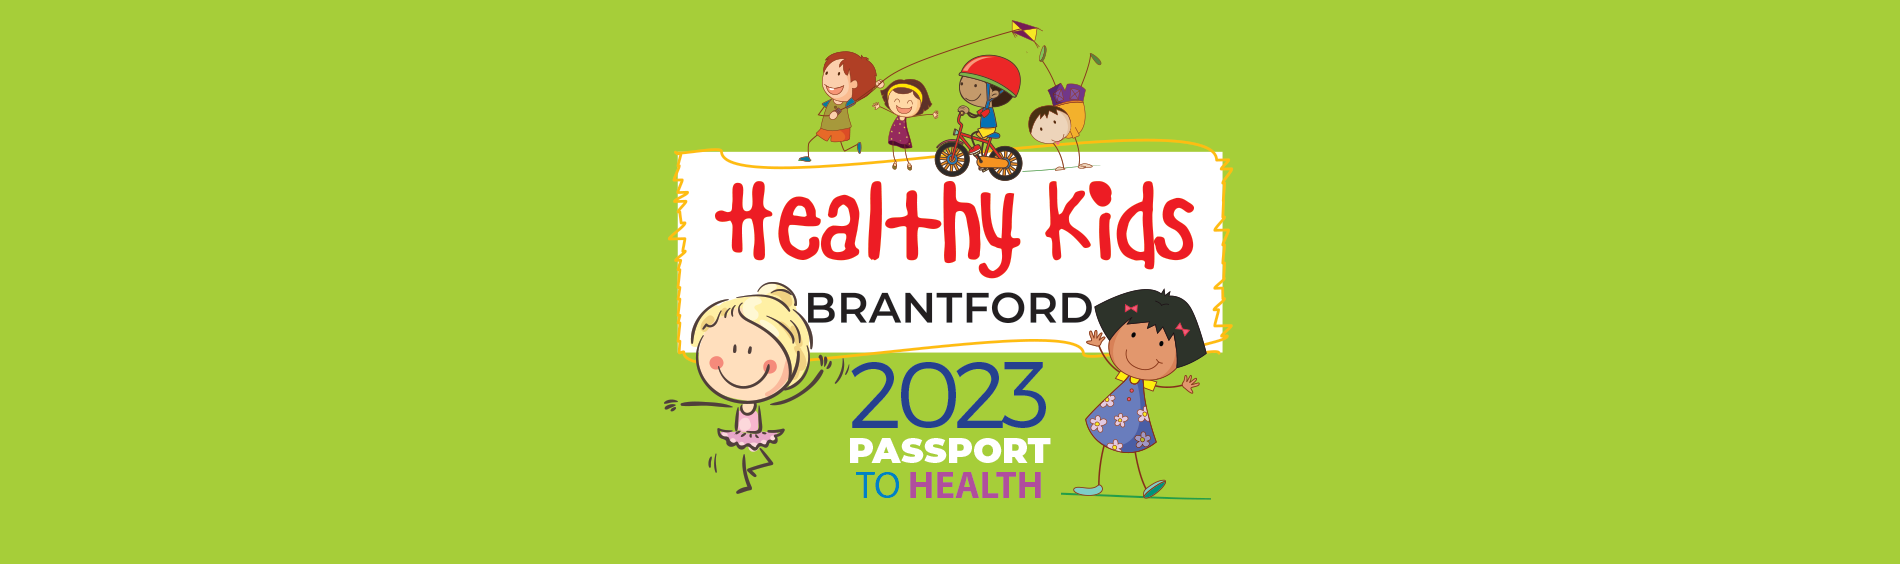 Healthy Kids Brantford Brant Passport to Health